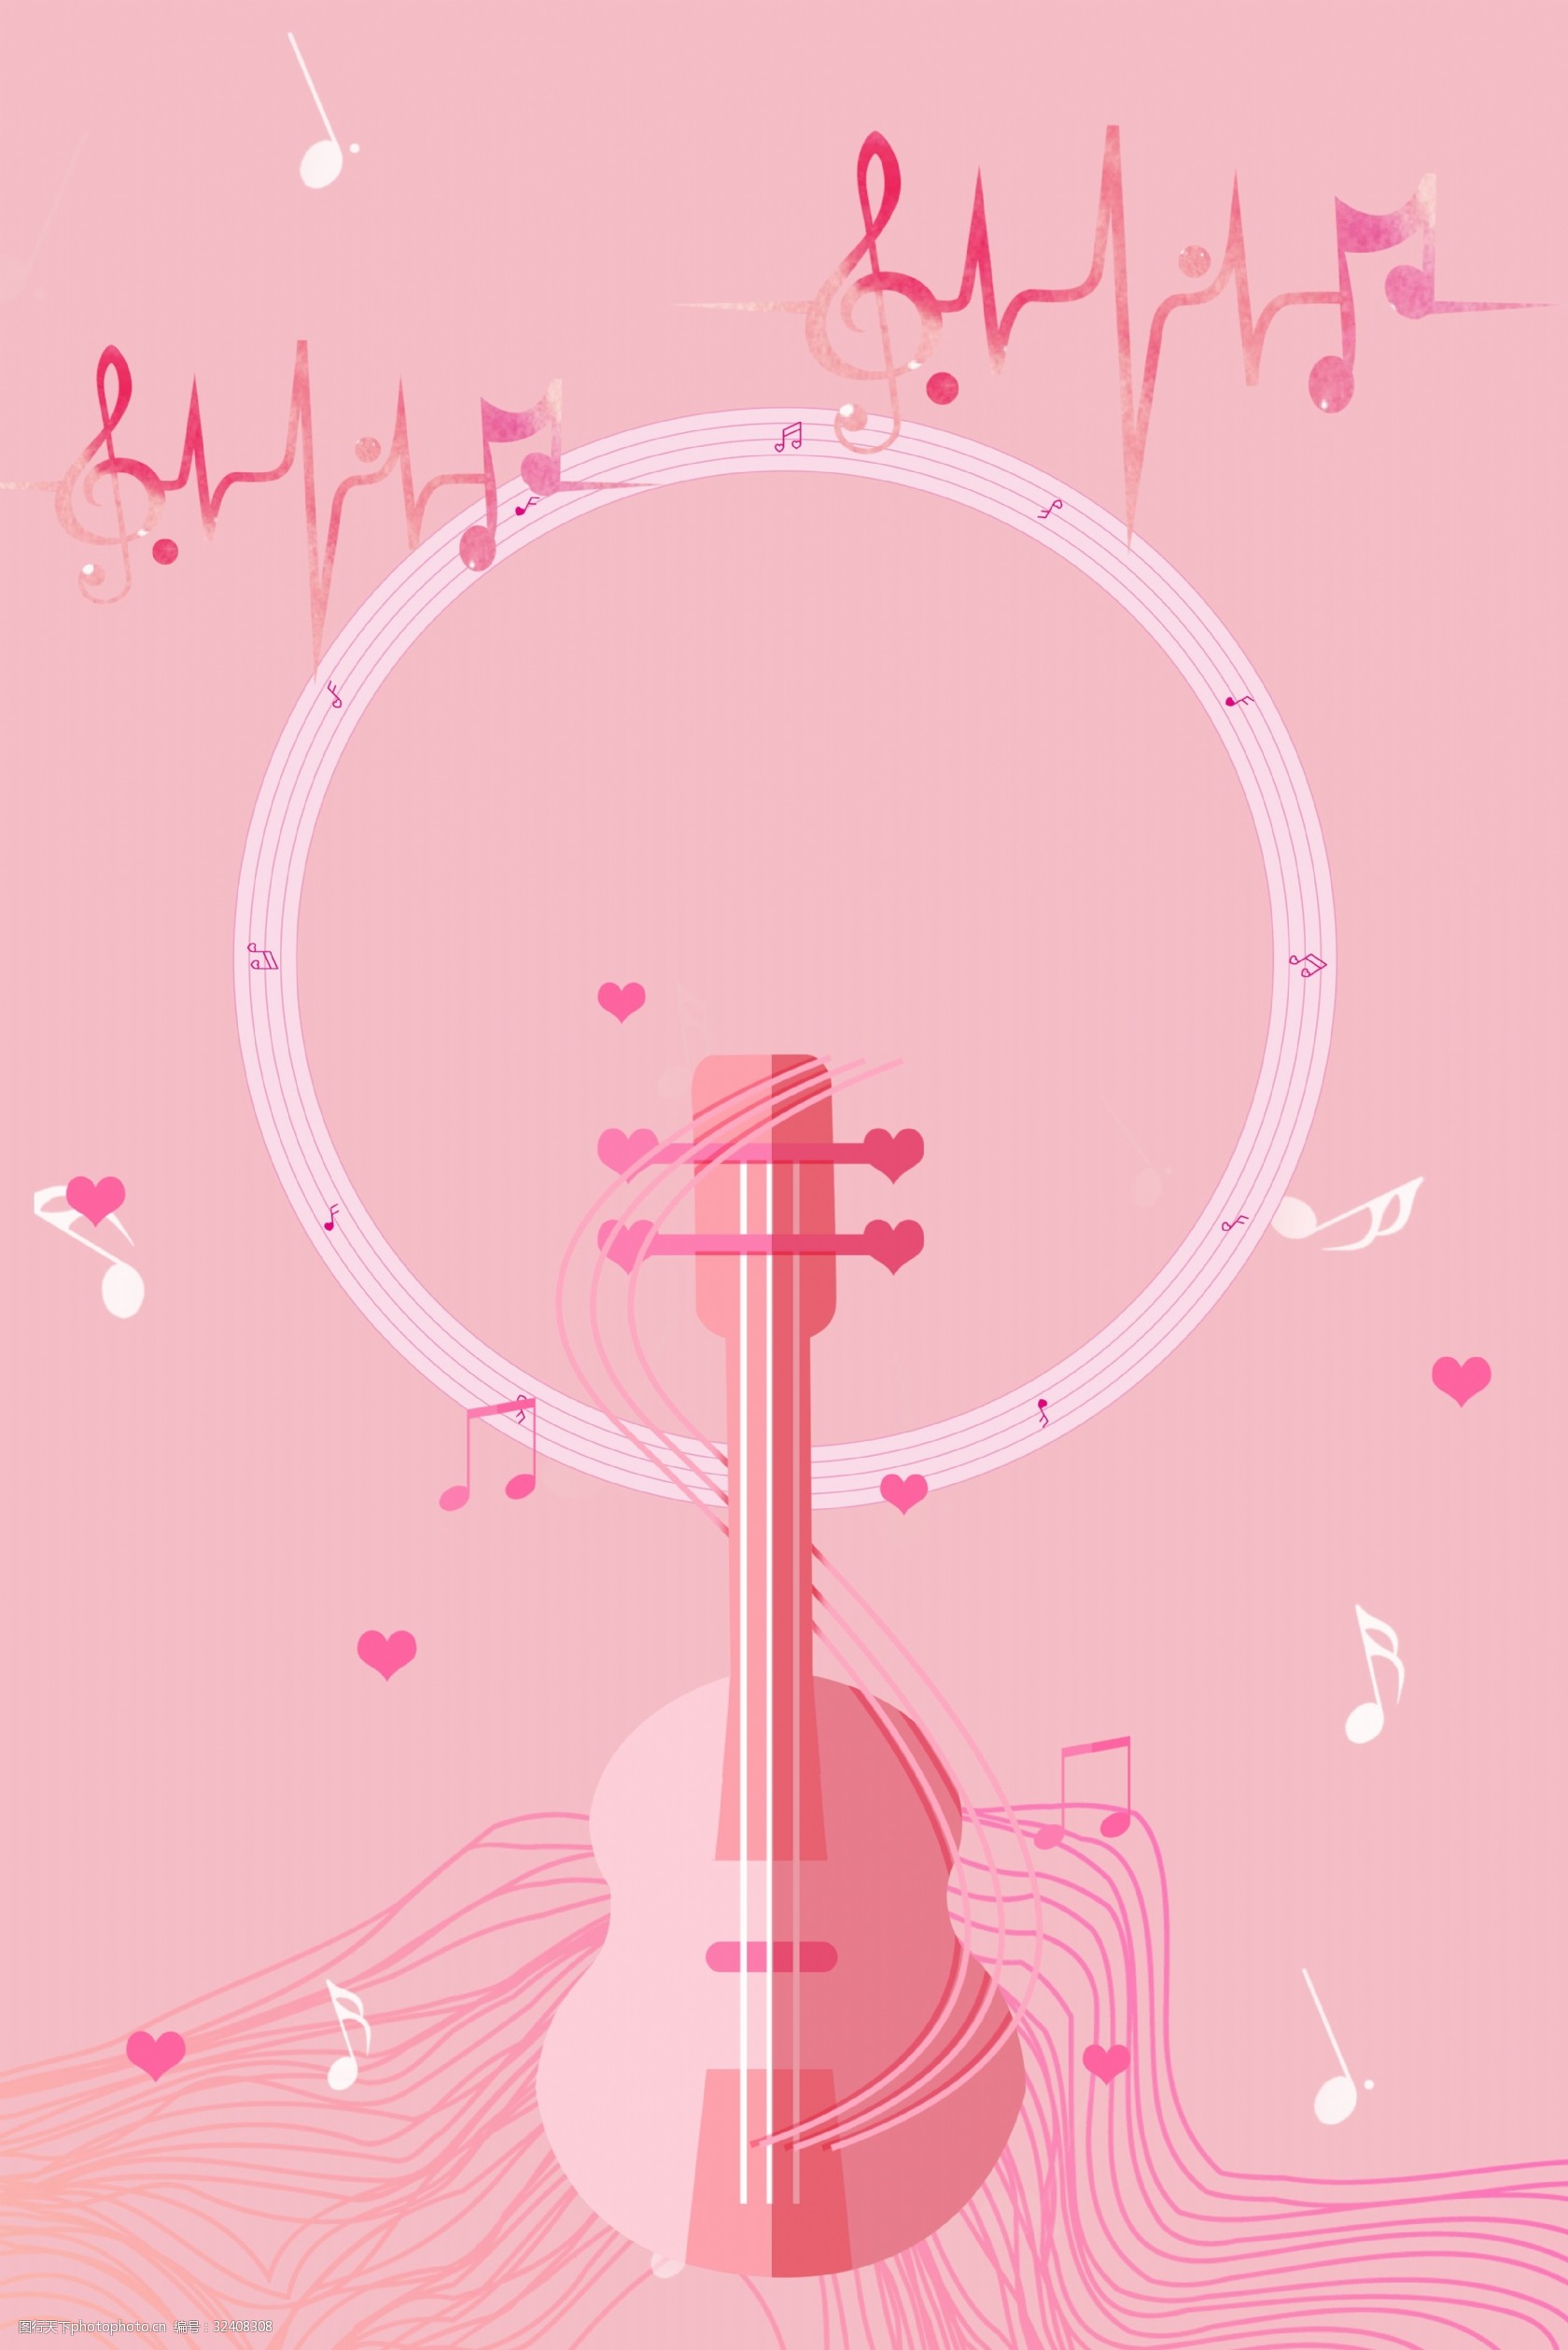 关键词:简约粉色音乐海报背景 音乐 音符 音乐节 乐器 吉他 粉色 线条